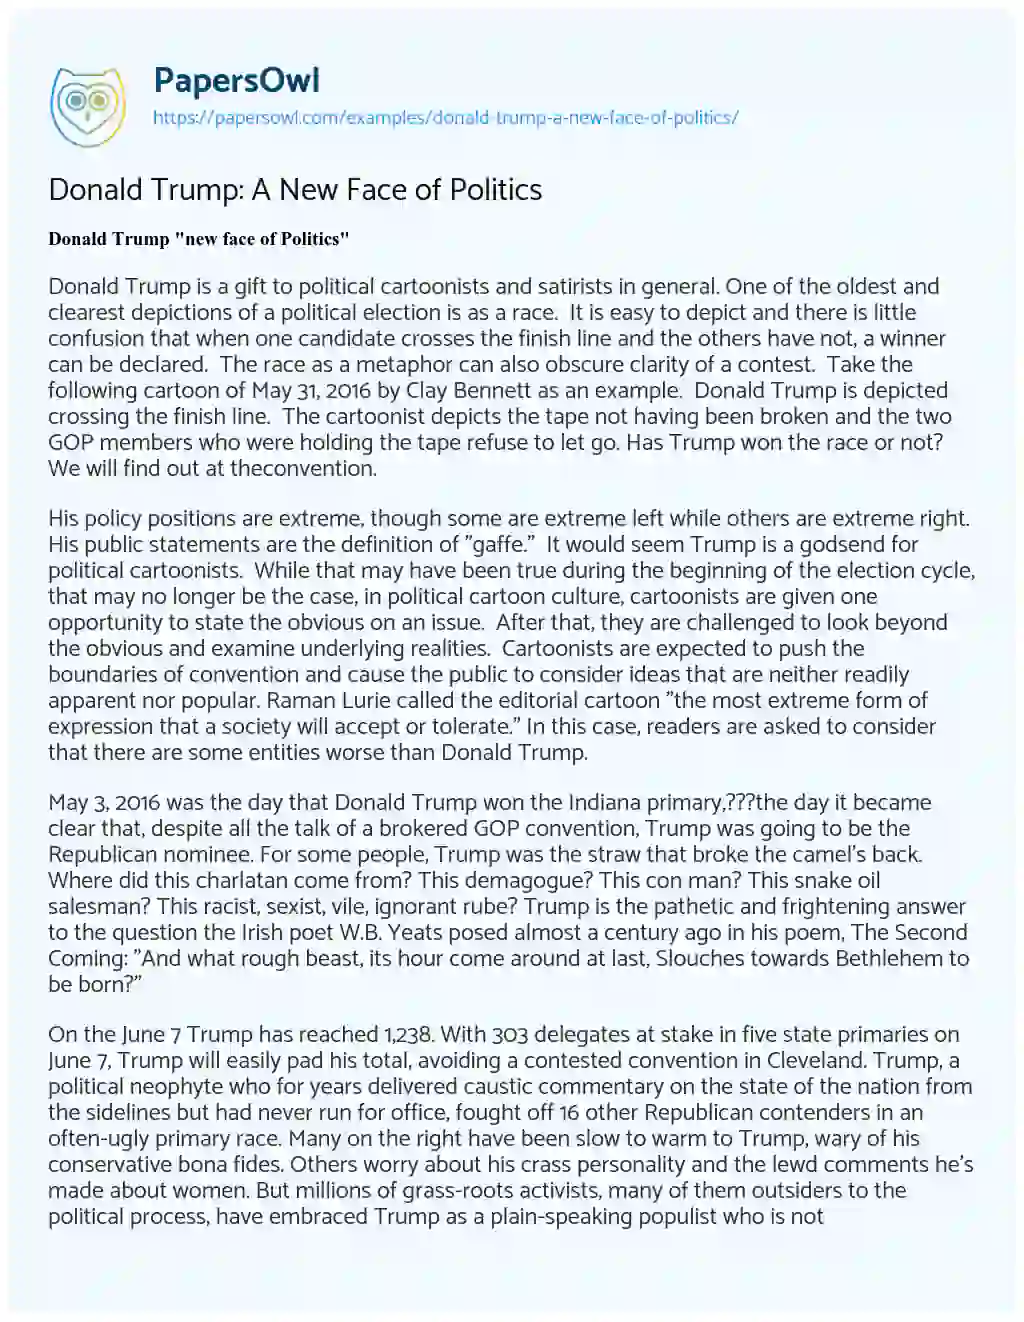 Essay on Donald Trump: a New Face of Politics 